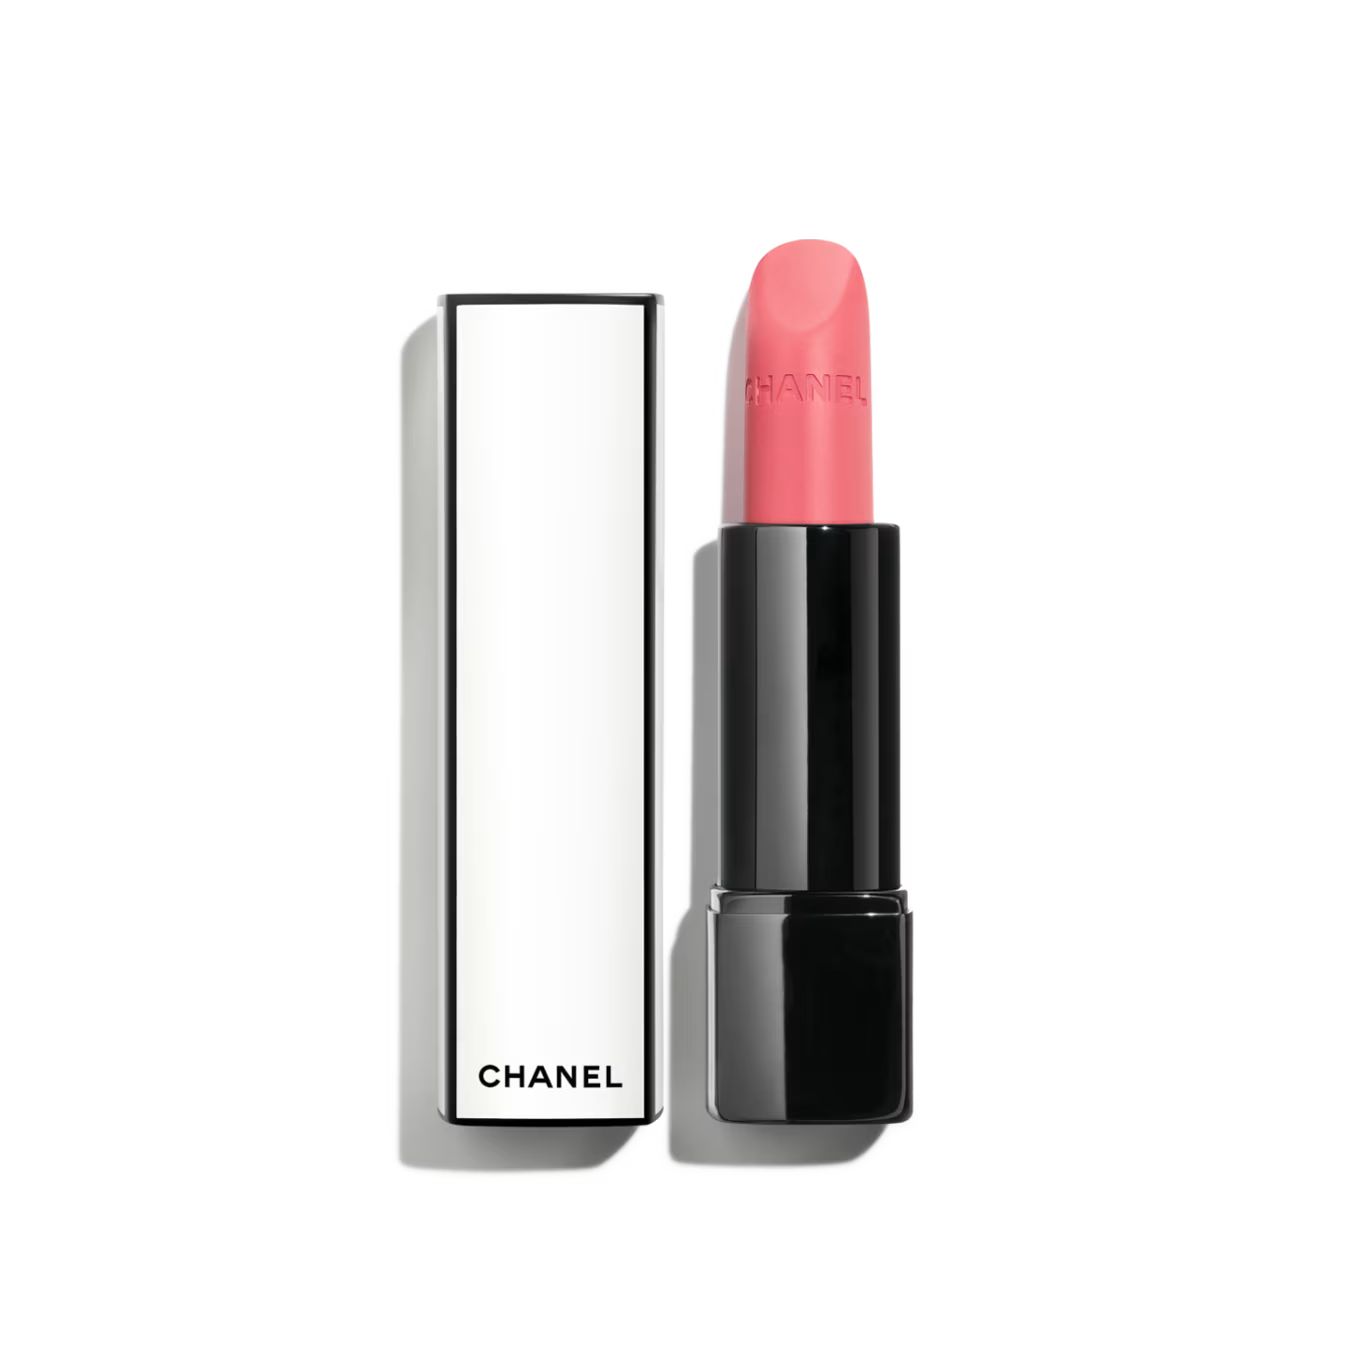 ROUGE ALLURE VELVET NUIT BLANCHE Luminous matte lip colour 07:00 | CHANEL | Chanel, Inc. (US)